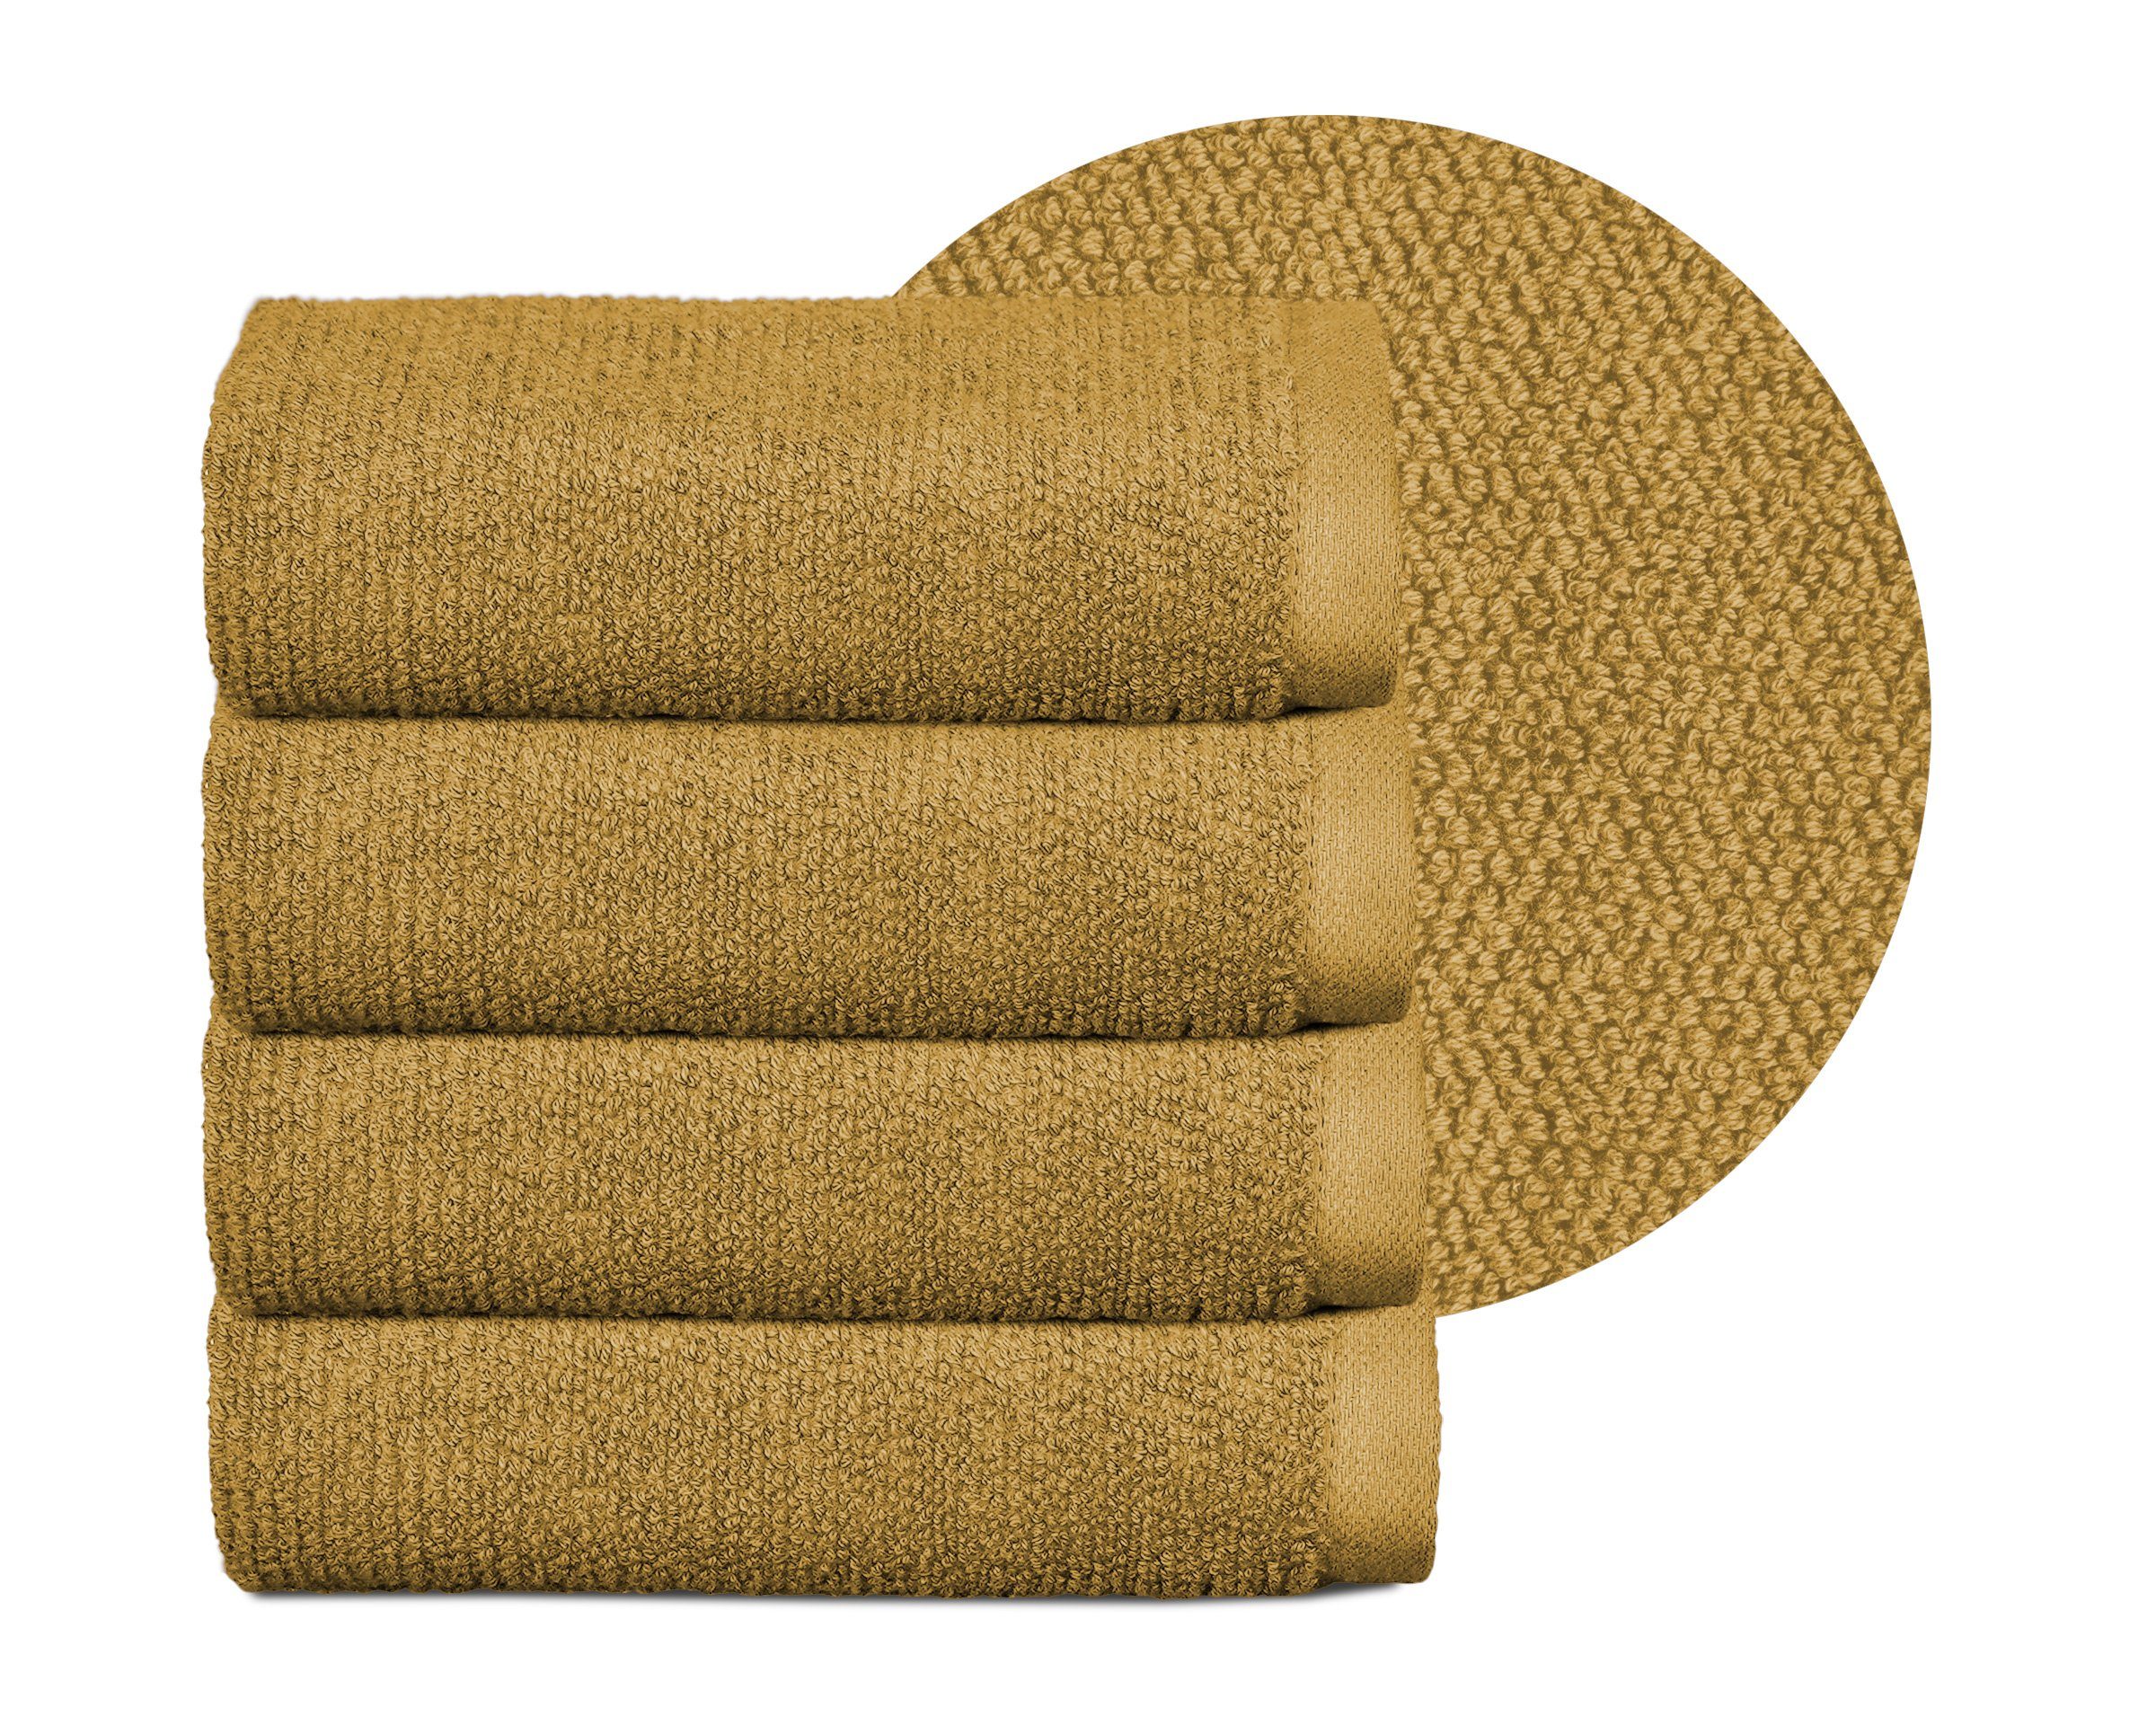 Beautex Handtuch Set Handtuch Set, Made in Europe, Frottier, (Multischlaufen-Optik, Frottier Premium Set aus 100% Baumwolle 550g/m) Gold